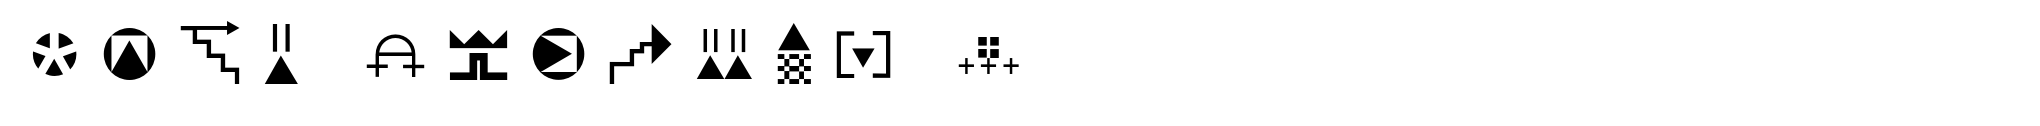 Znak Symbols 1 image